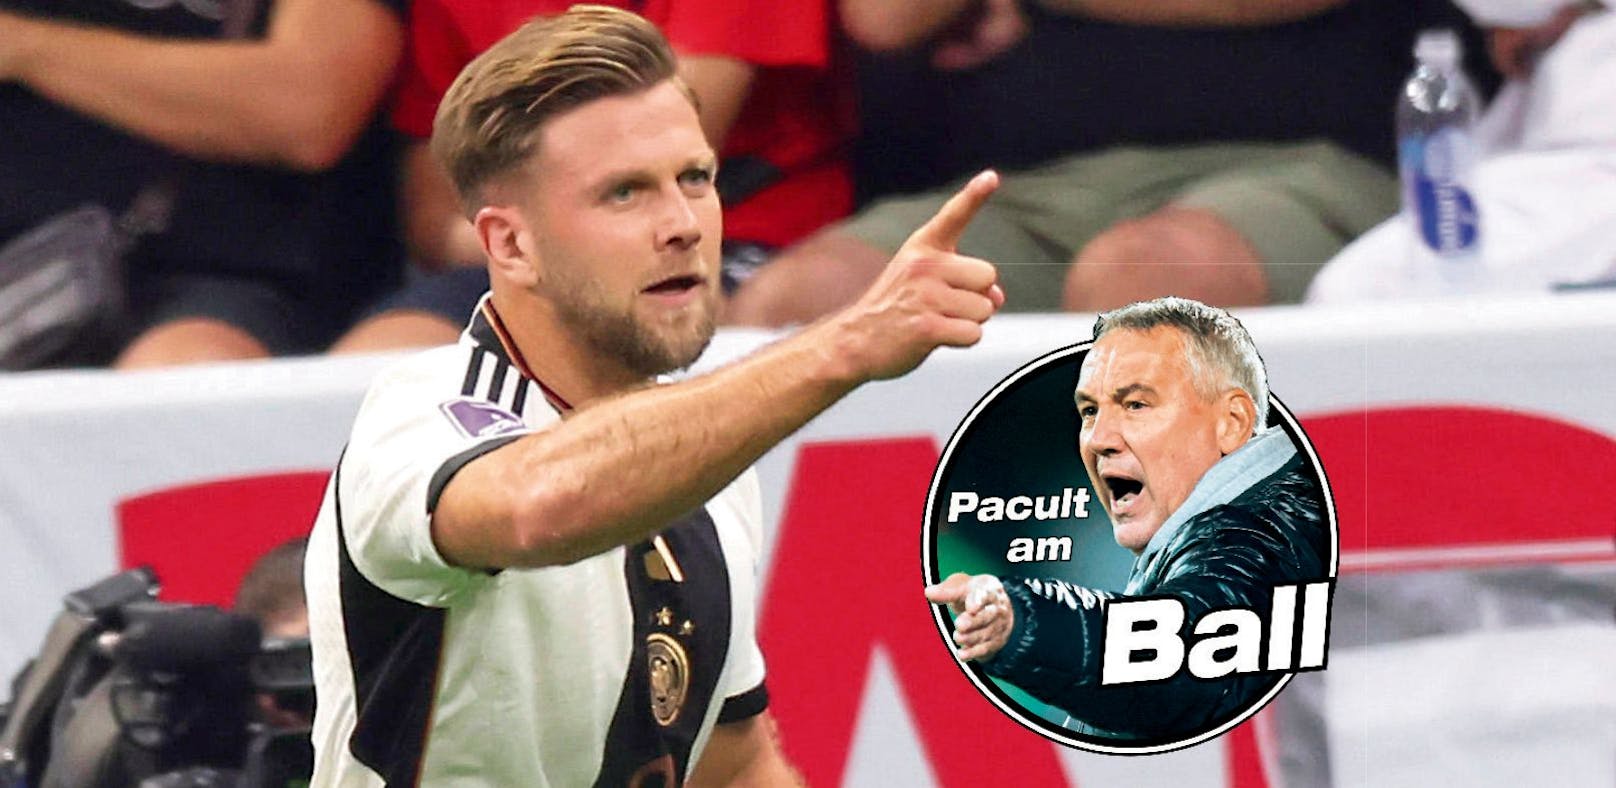 Pacult: "Als Trainer würde ich Füllkrug gegen Costa Rica aufstellen."